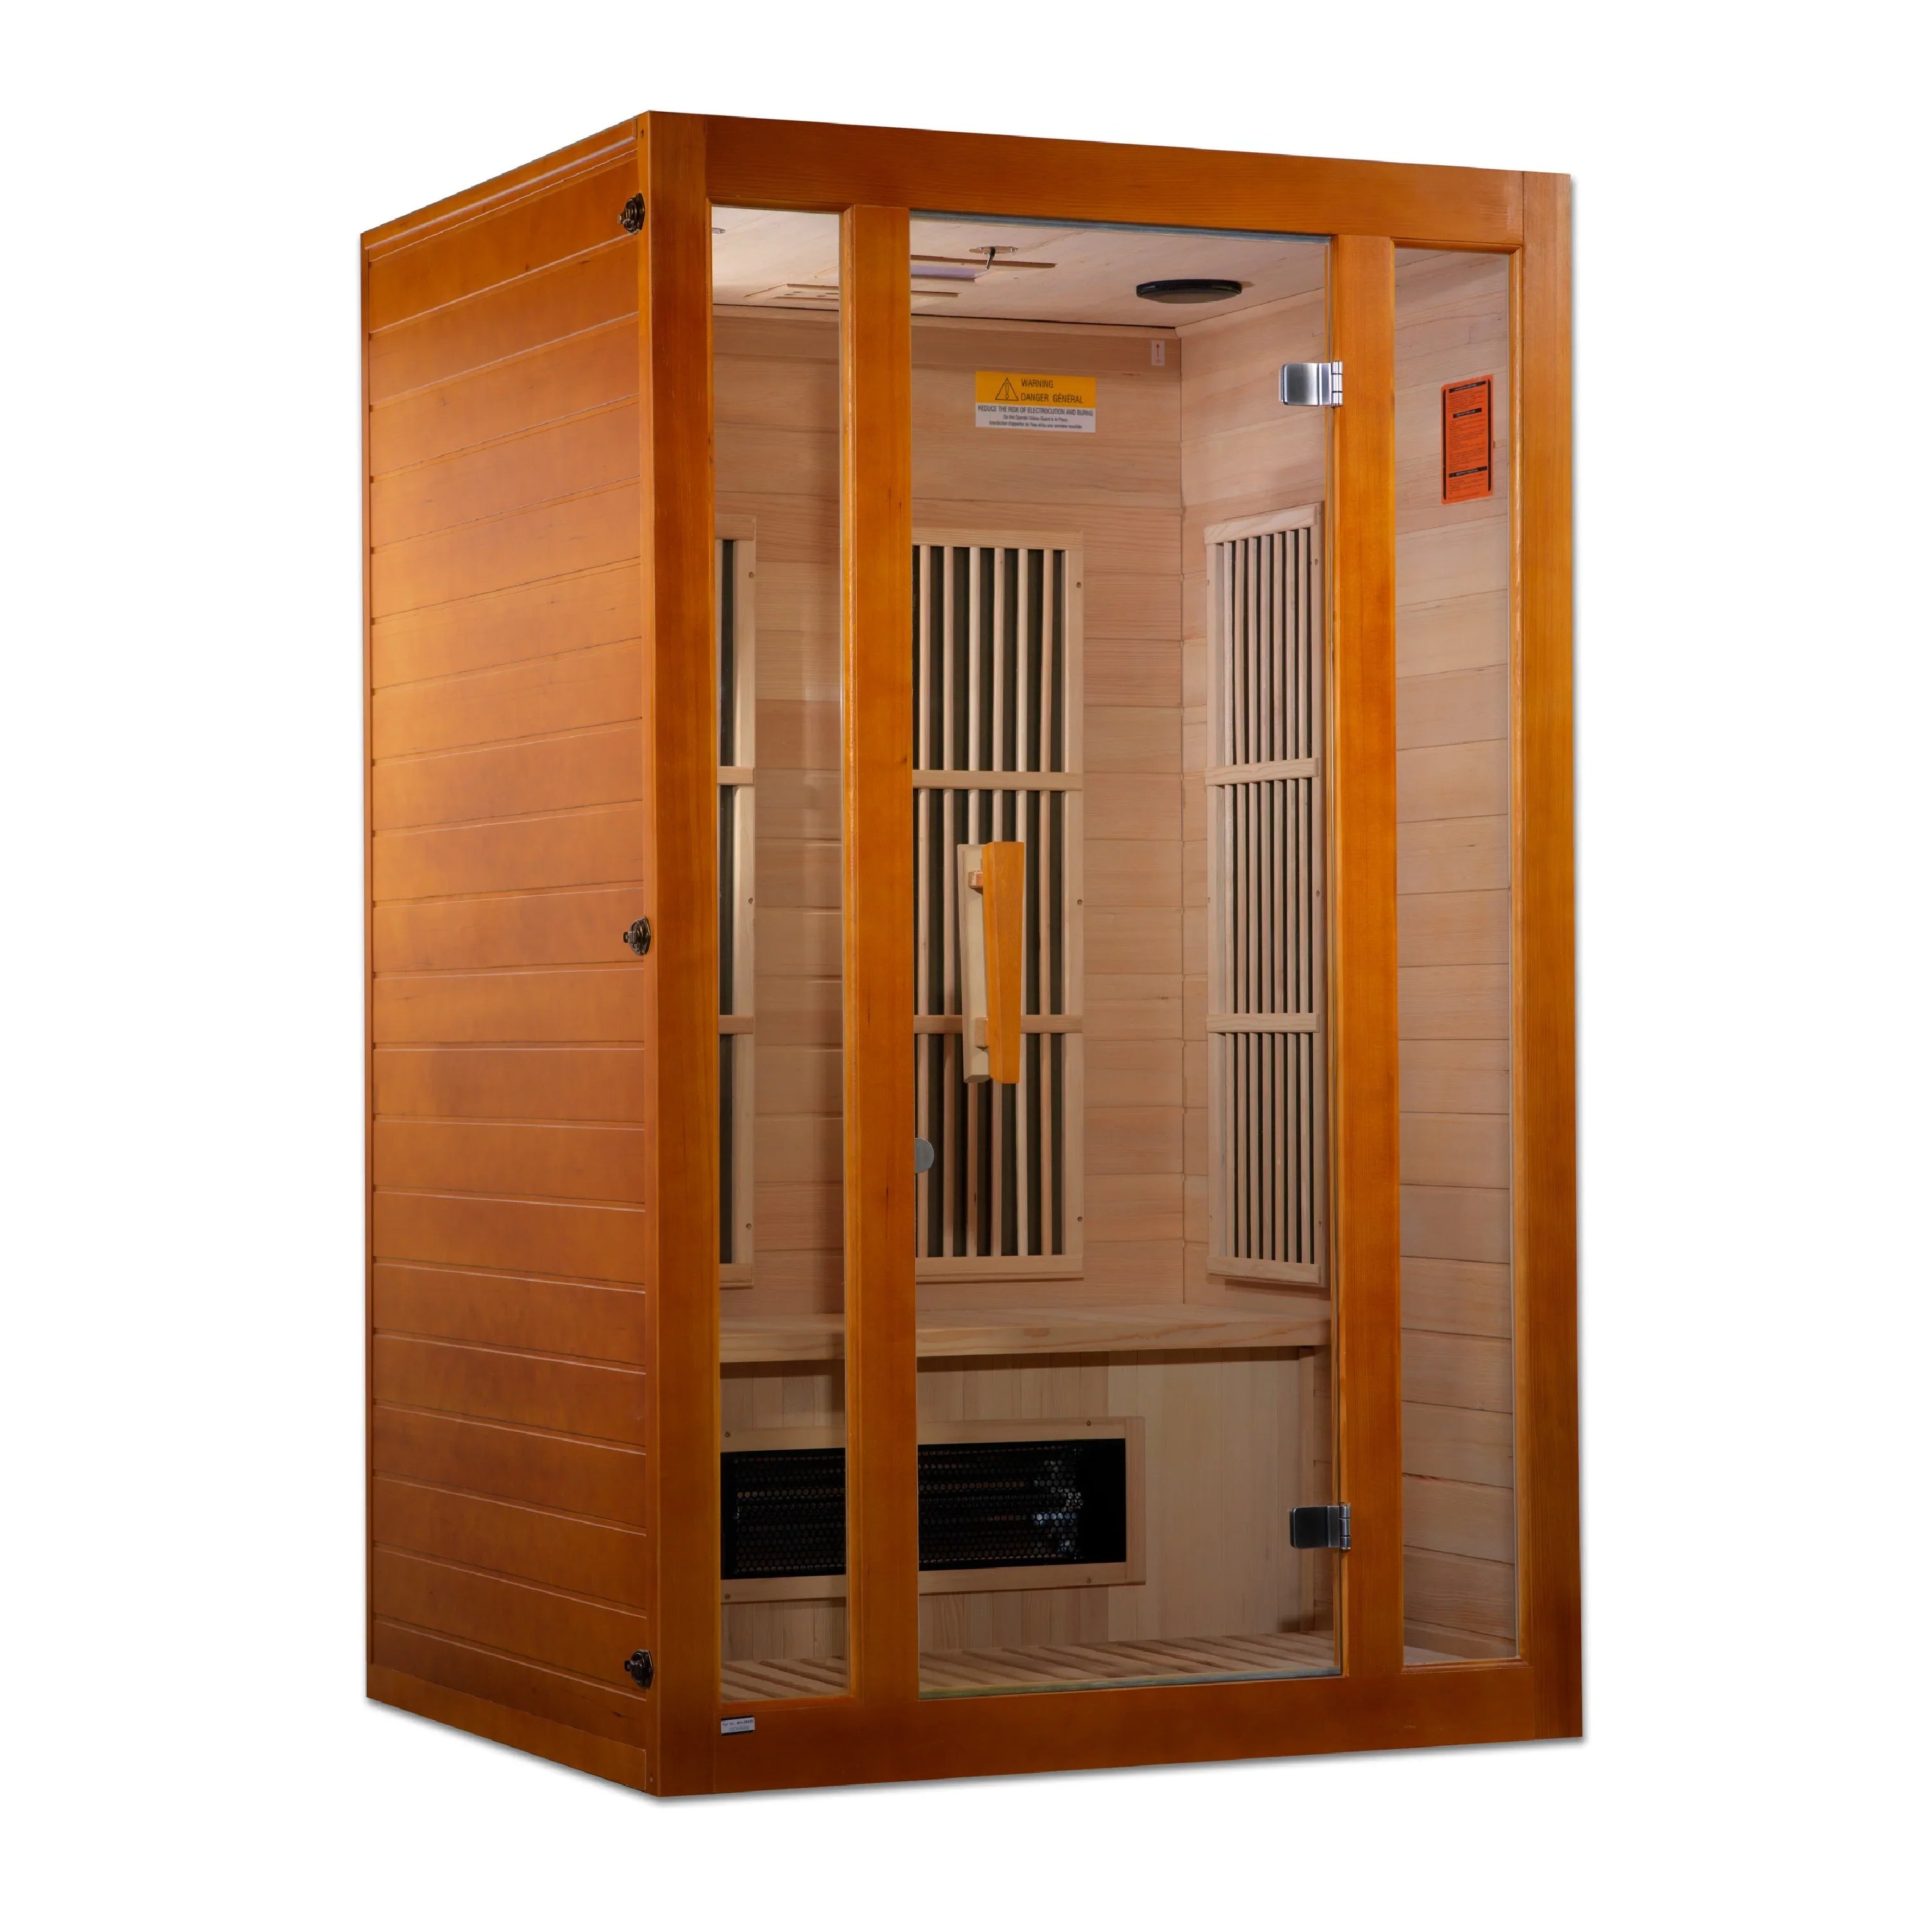 Maxxus Dual Tech 2 person Low EMF FAR Infrared Sauna (Canadian Hemlock) INFRARED SAUNA Maxxus Saunas   